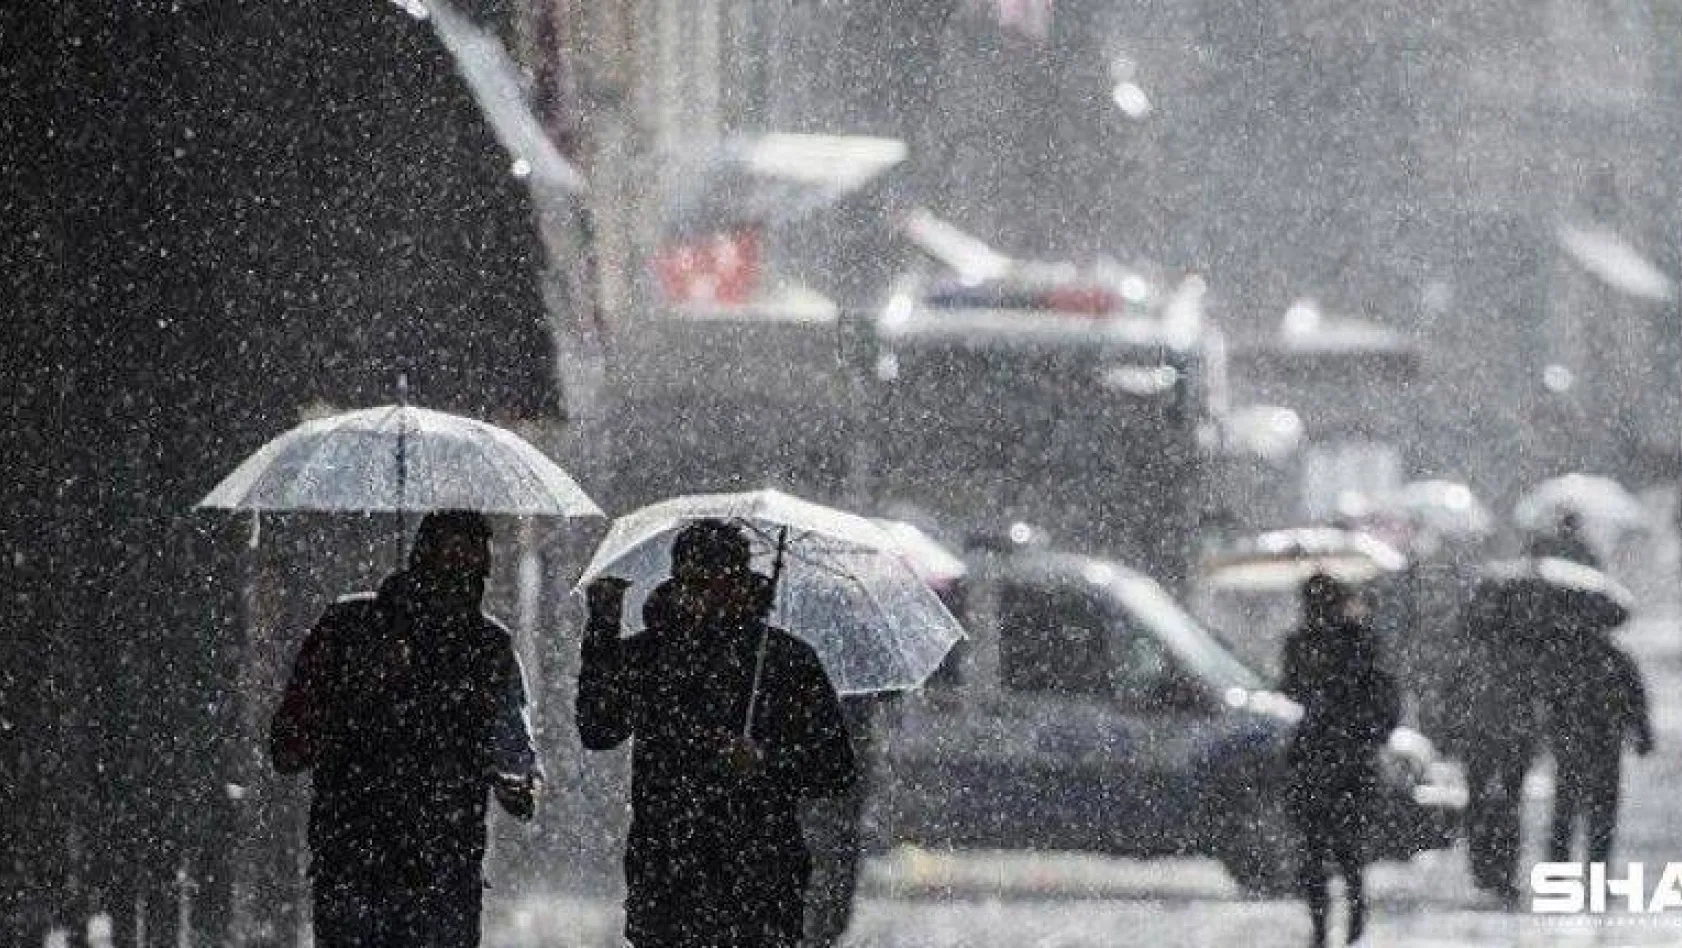 İstanbul ve birçok il için kuvvetli yağış uyarısı